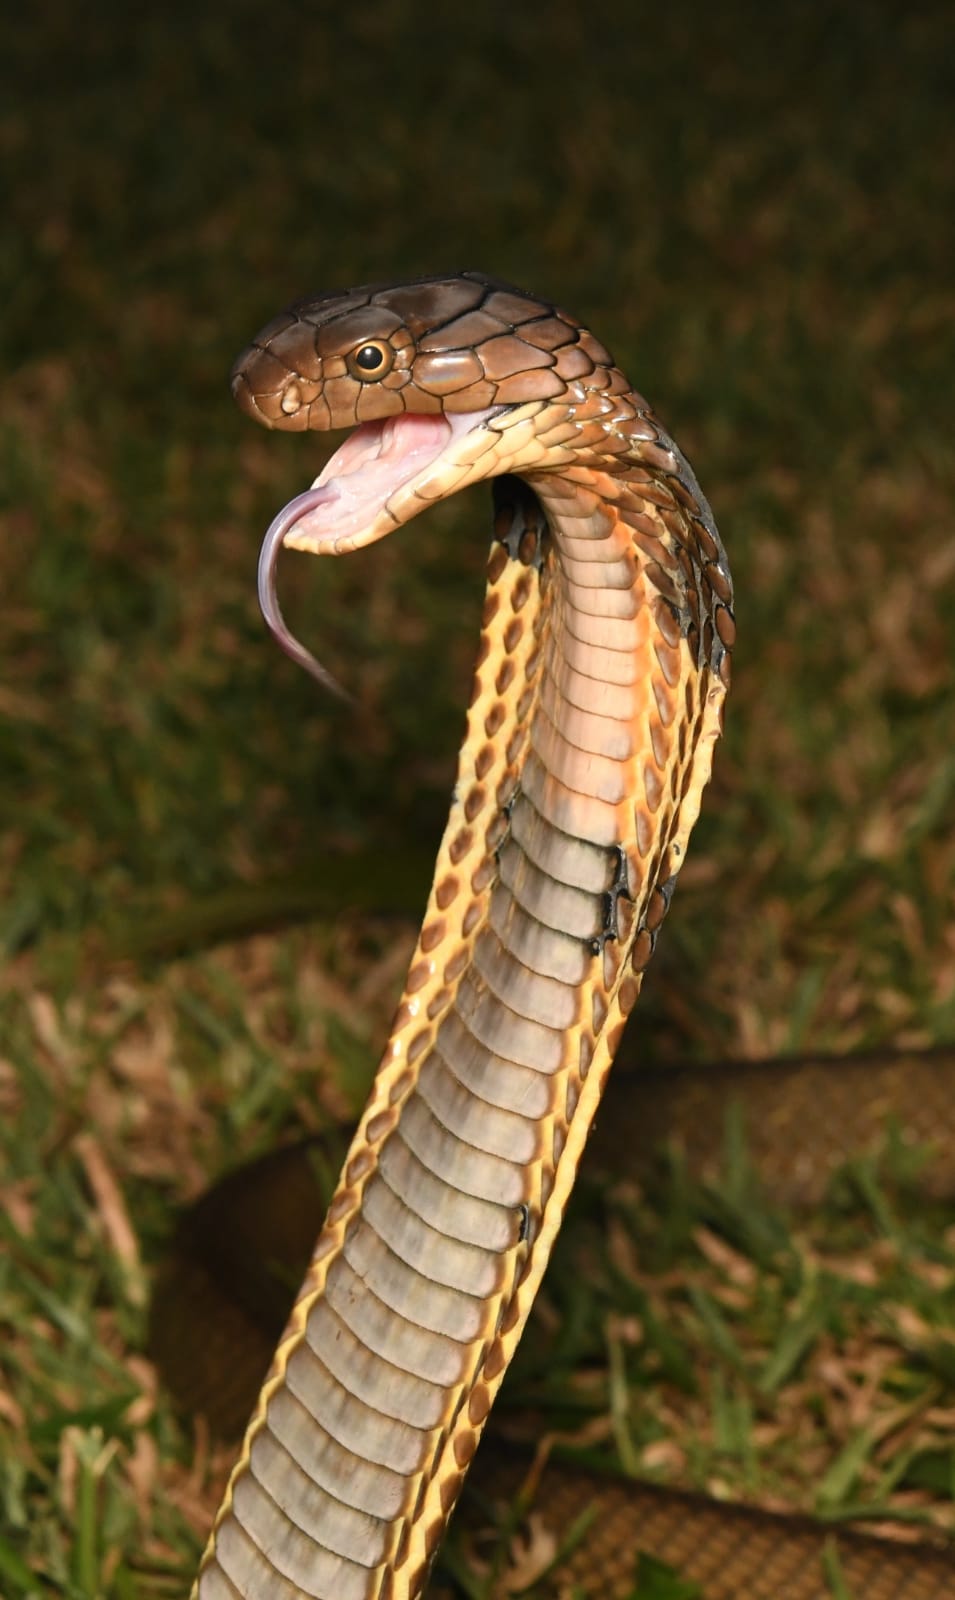 King Cobra - Ophiophagus hannah